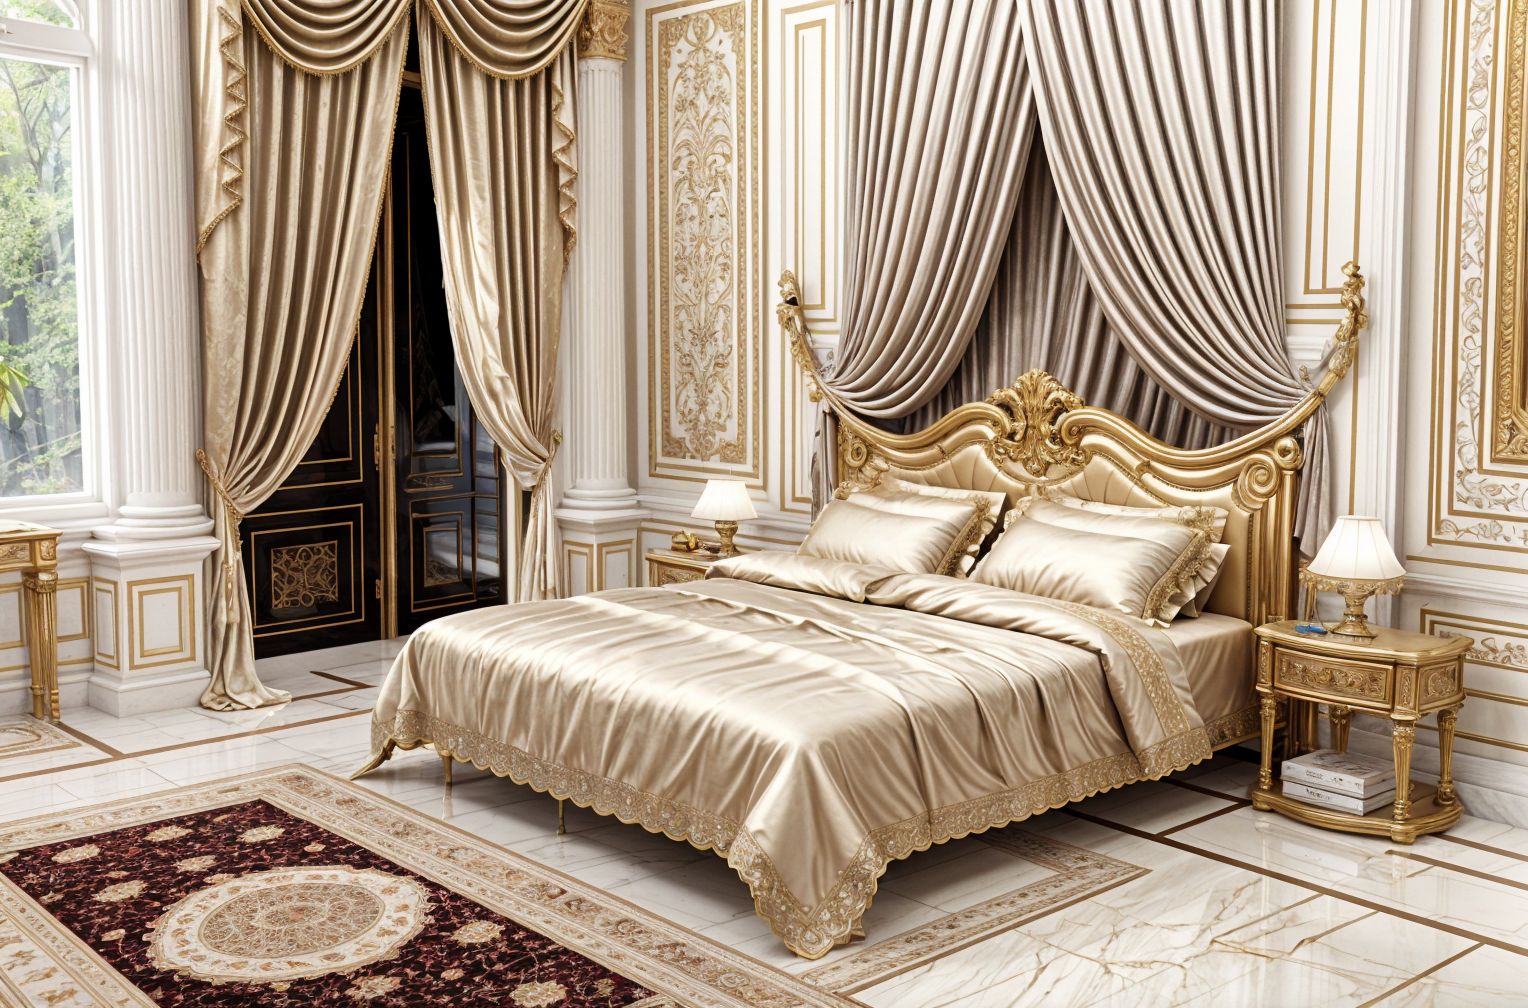 Neoclassic style Bedroom